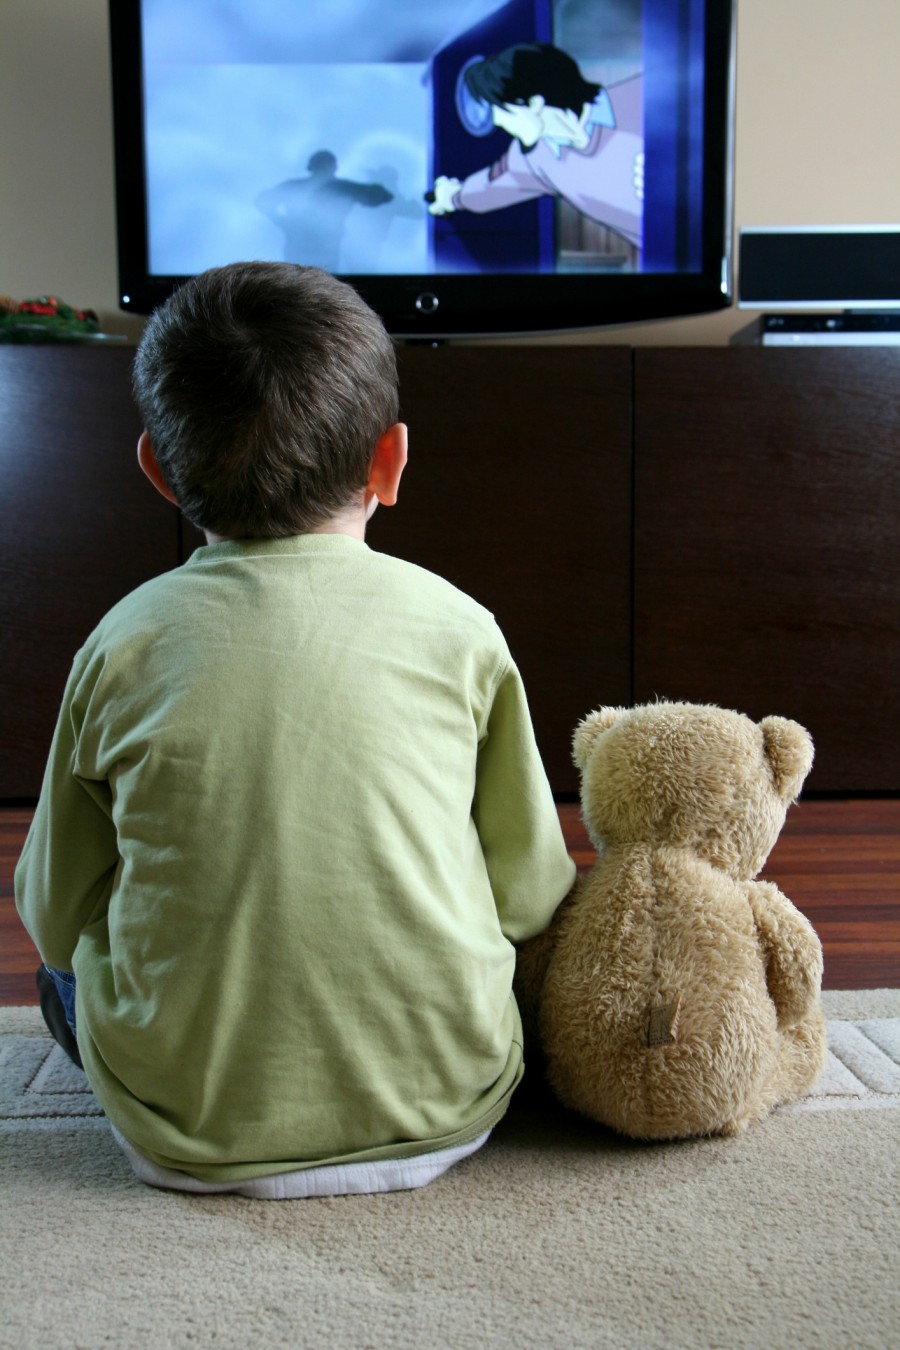 Ce efect are privitul la televizor în exces asupra noastră şi mai ales asupra copiilor